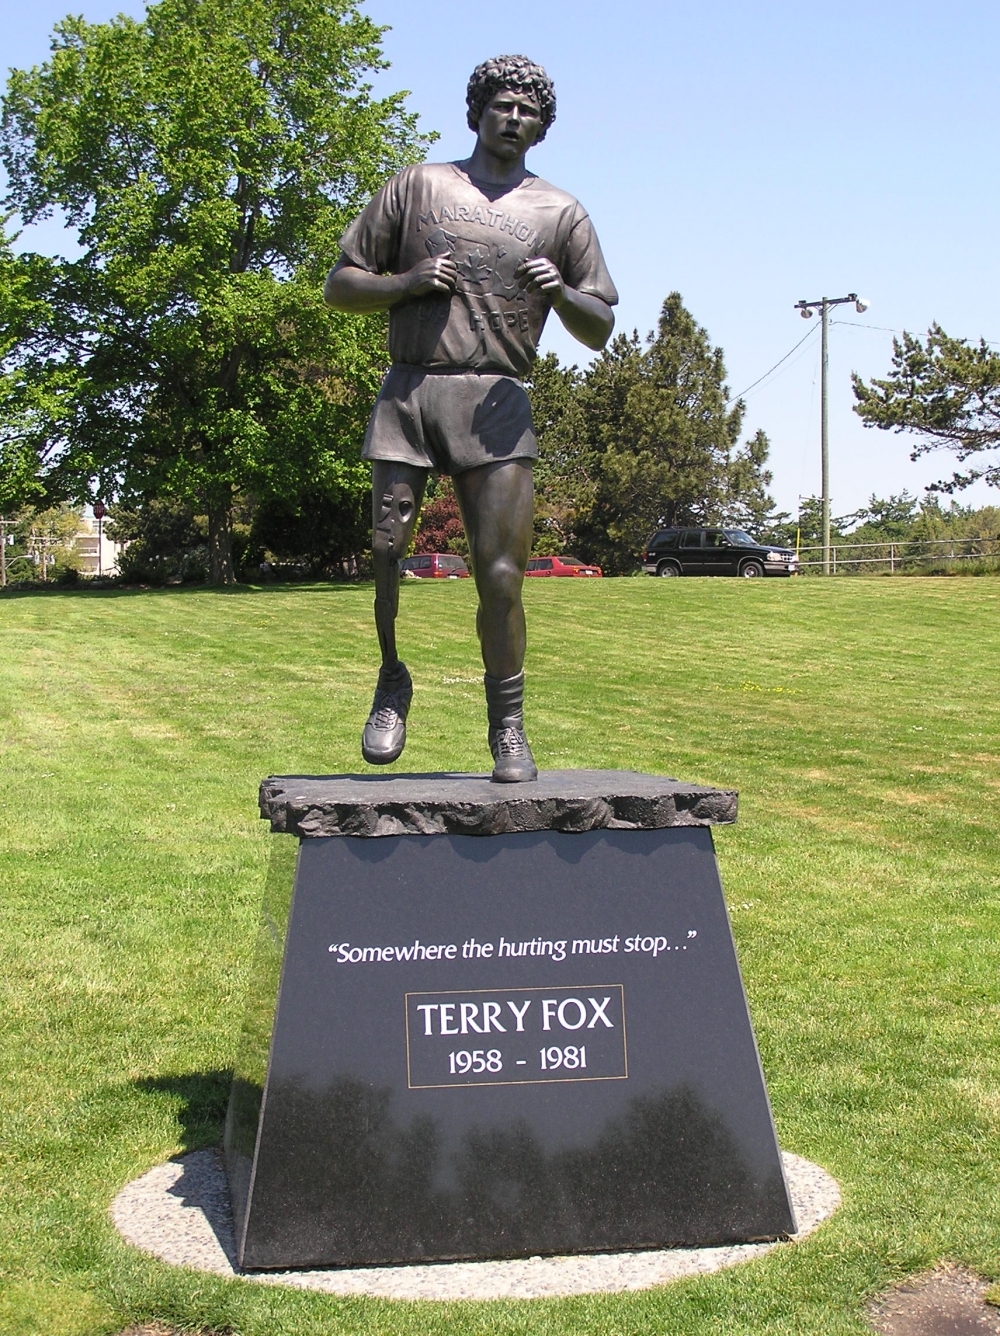 Terry Fox Run không chỉ đóng góp tiền cho nghiên cứu mà còn nêu cao tinh thần cho người bệnh trong cuộc chiến chống ung thư